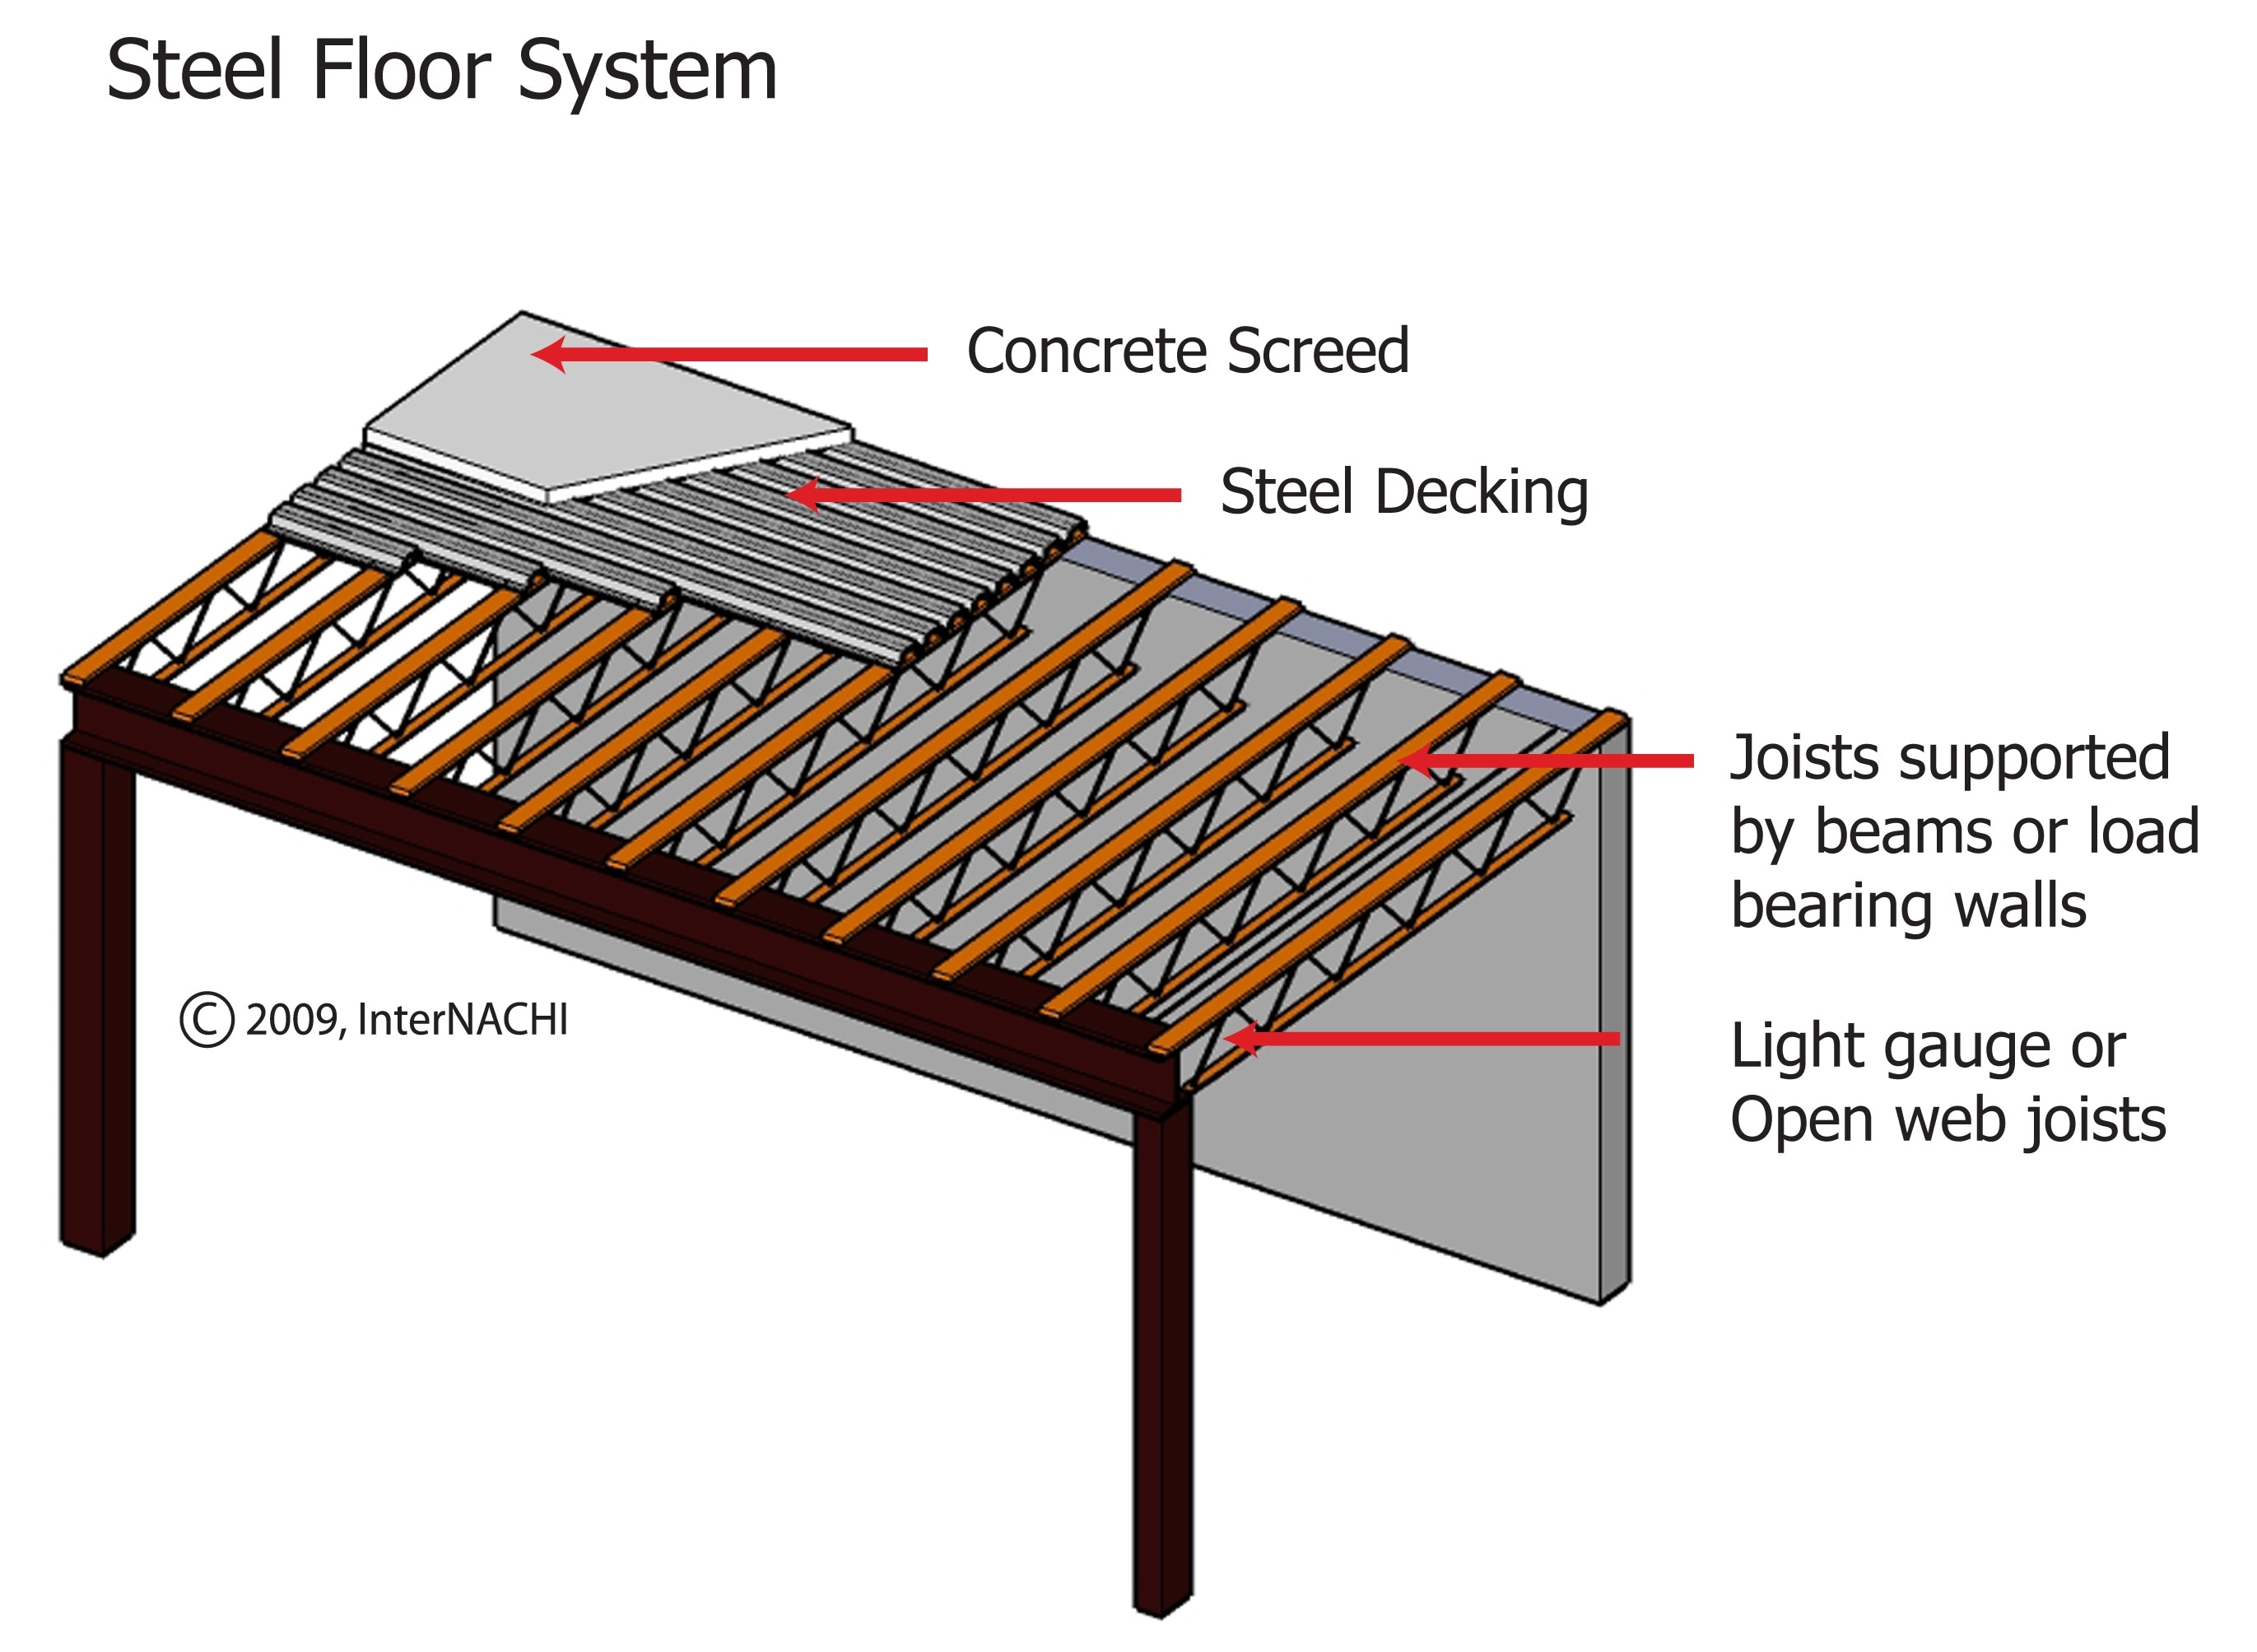 Steel floor system.